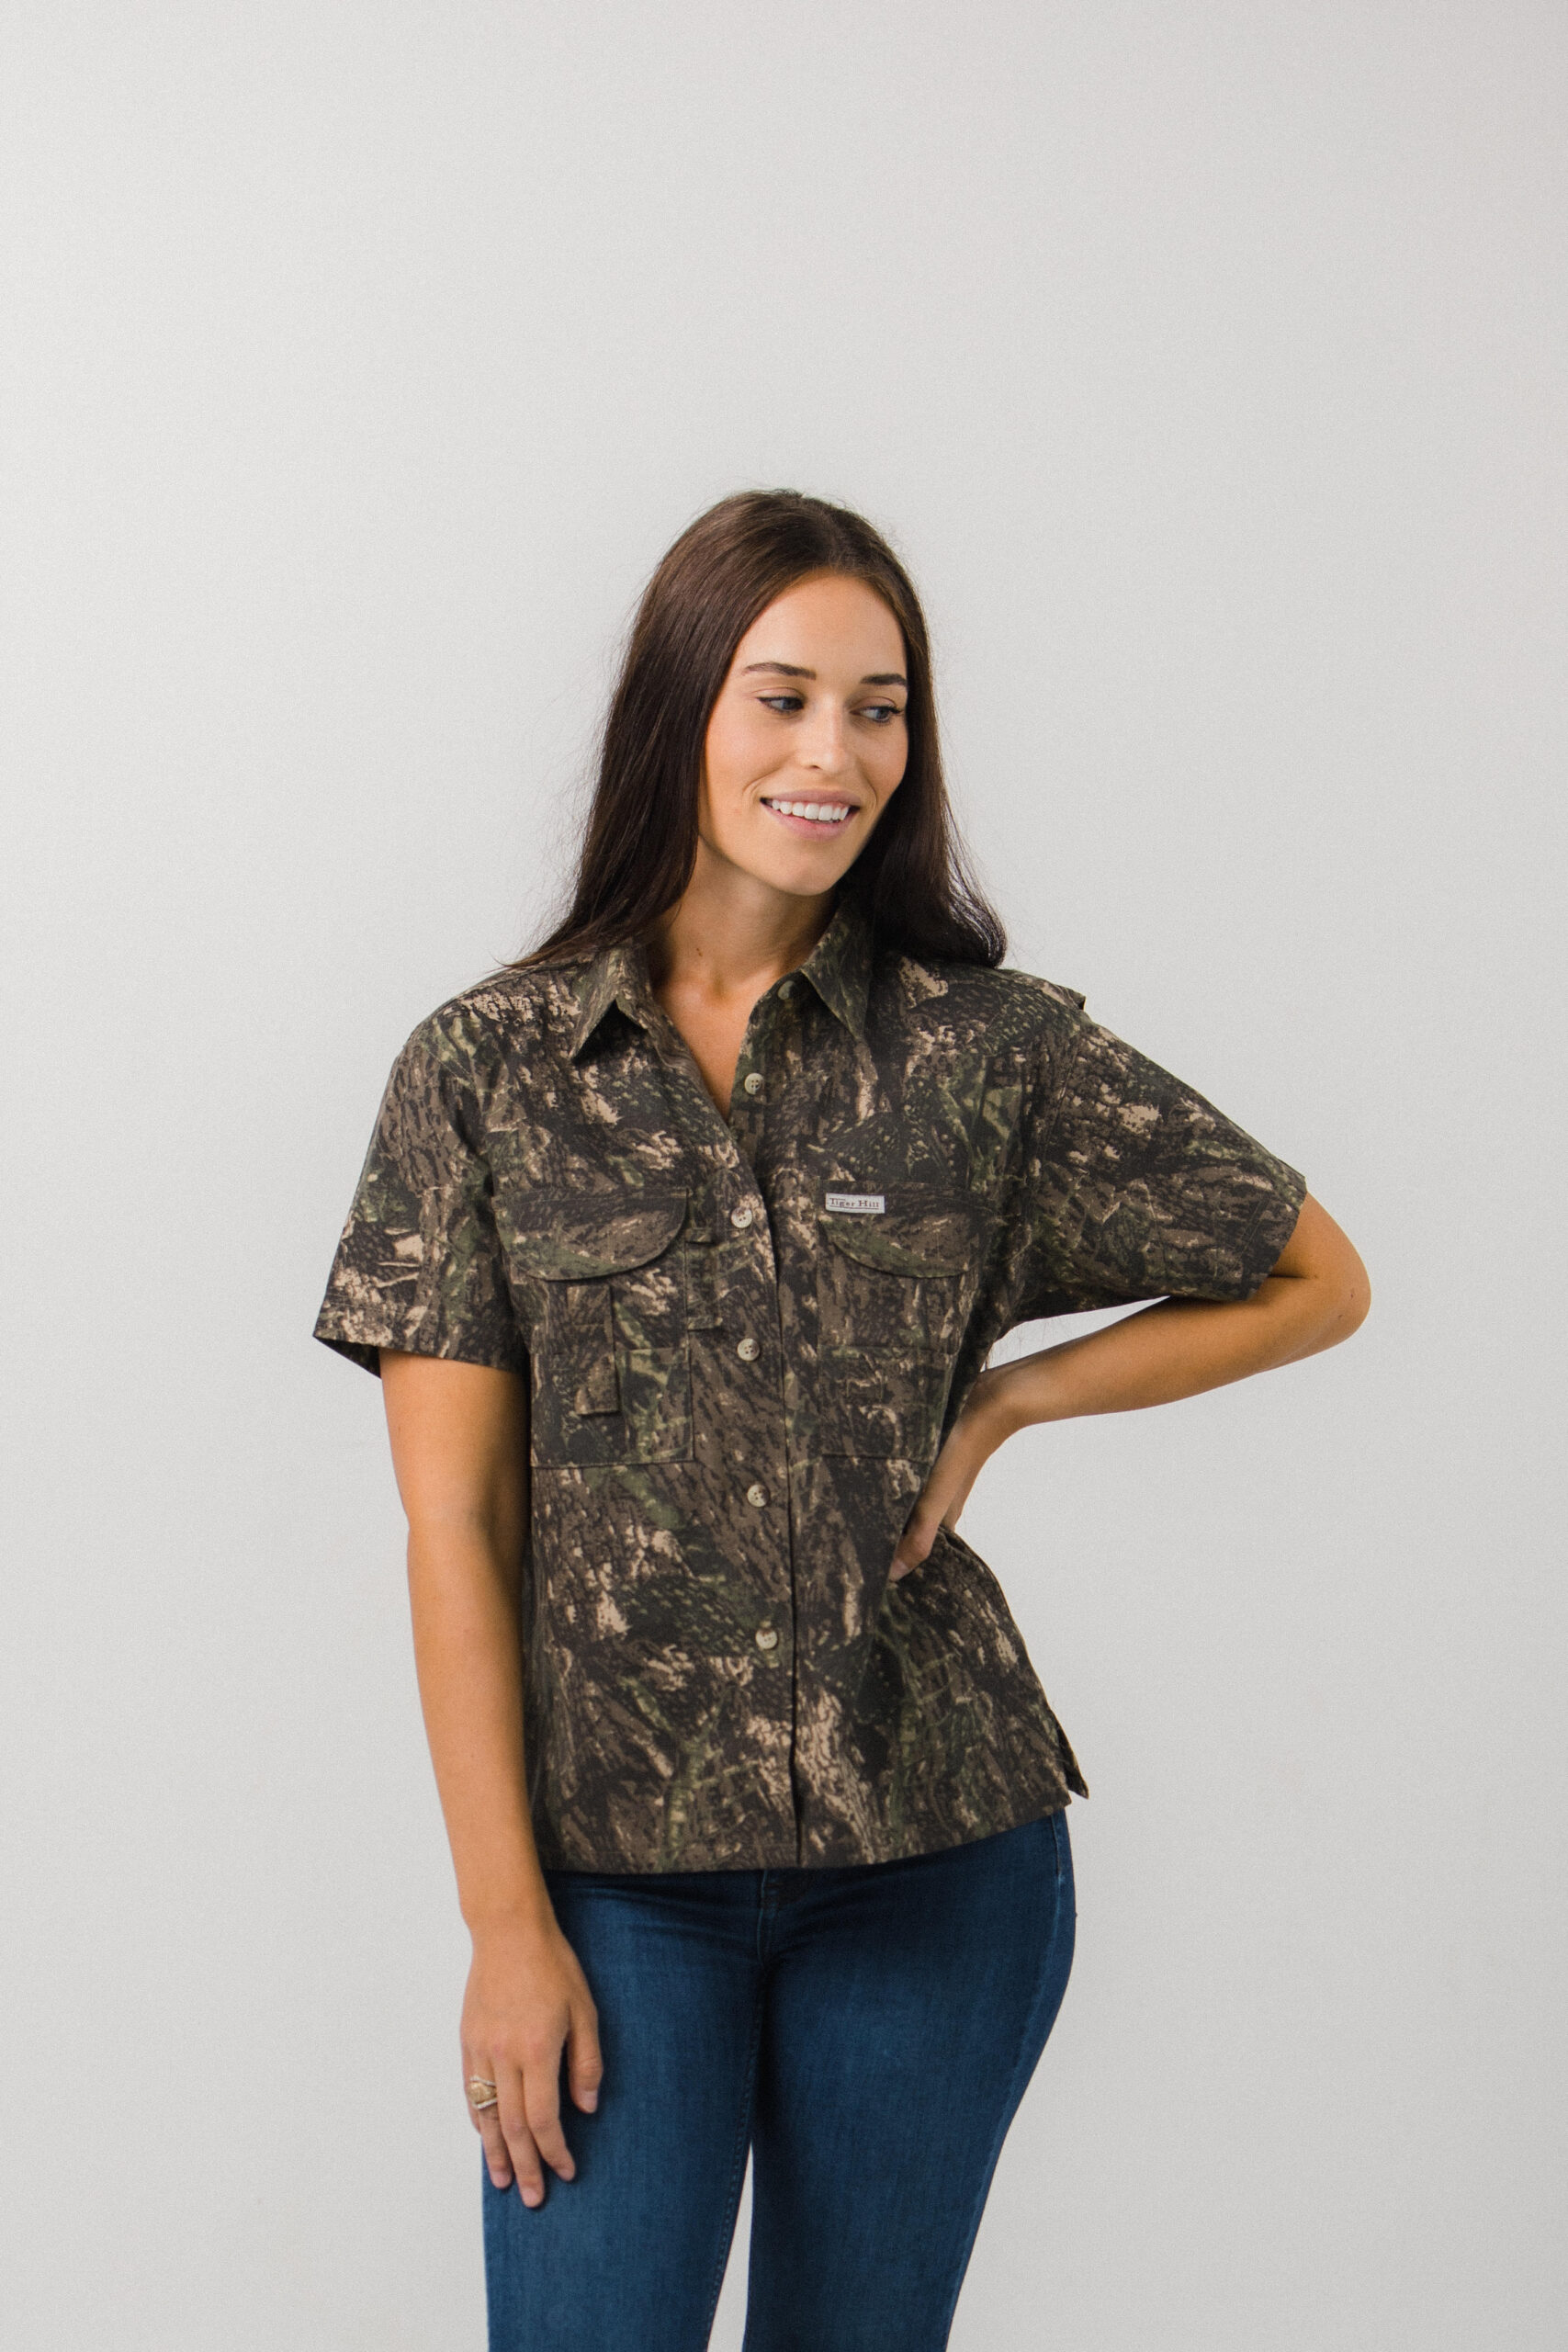 Fishing Shirts - Women's - Camo Fishing Shirt - FH Outfitters